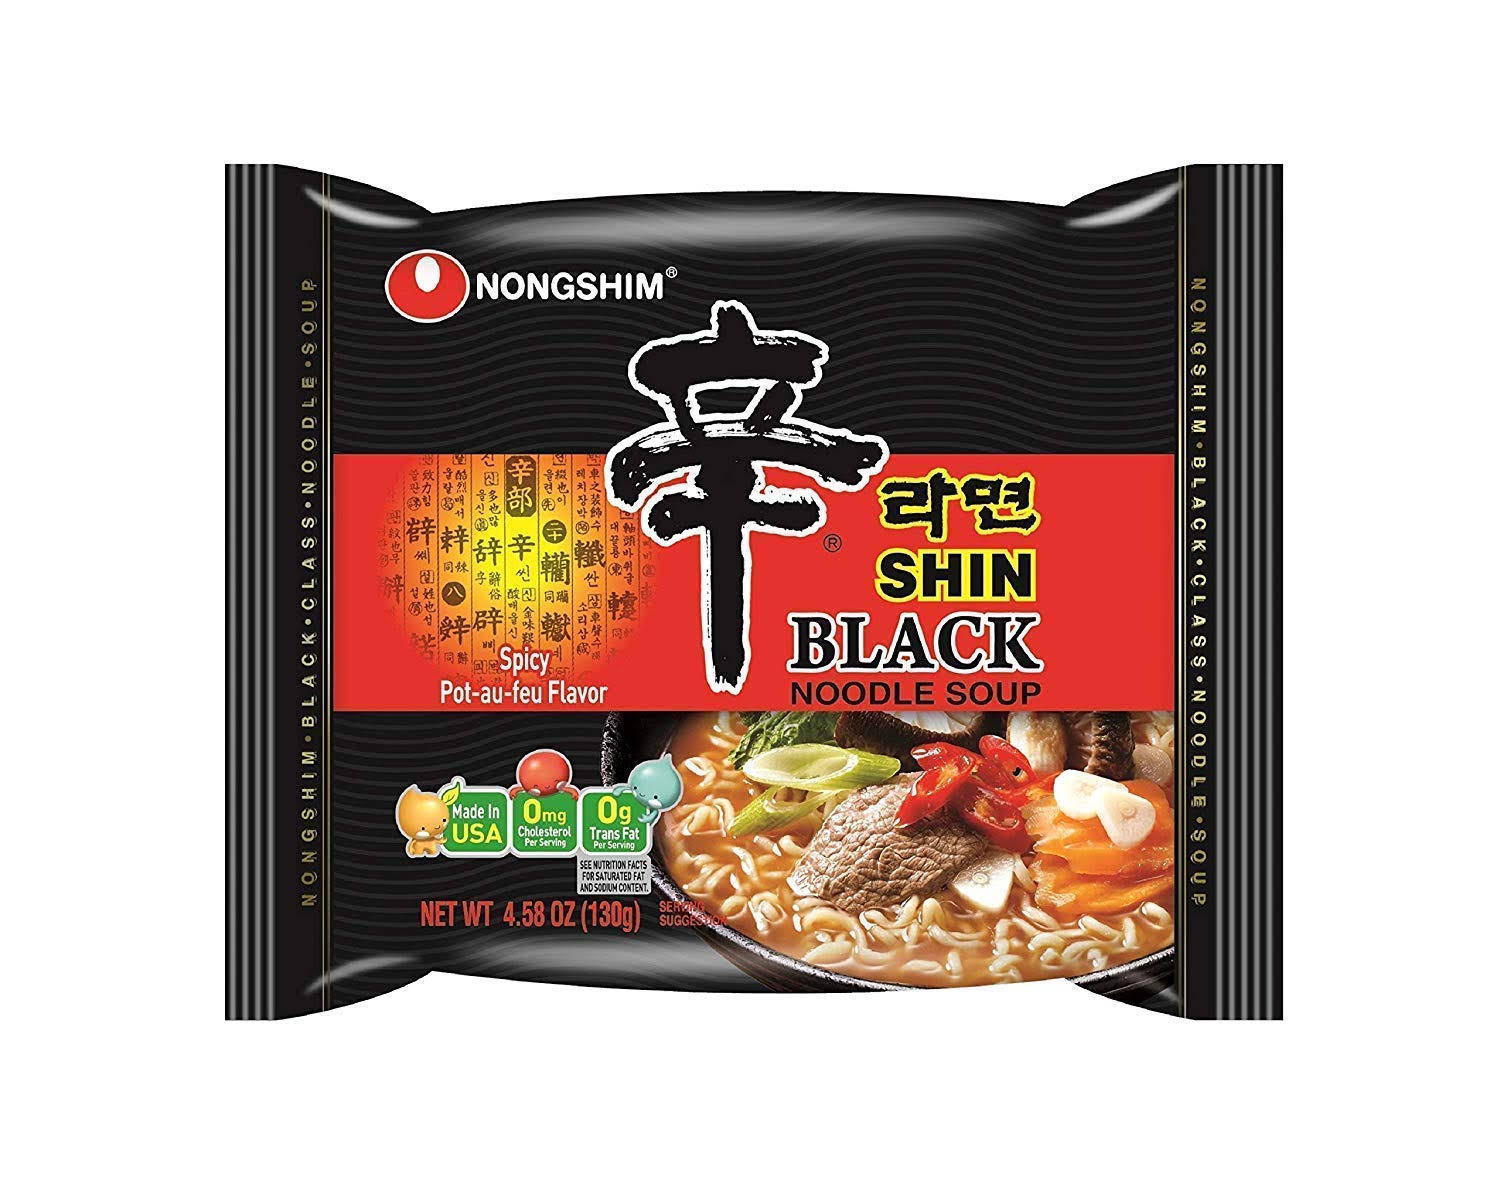 Nongshim Shin Black Noodle Soup - Spicy Flavor, 4.58oz